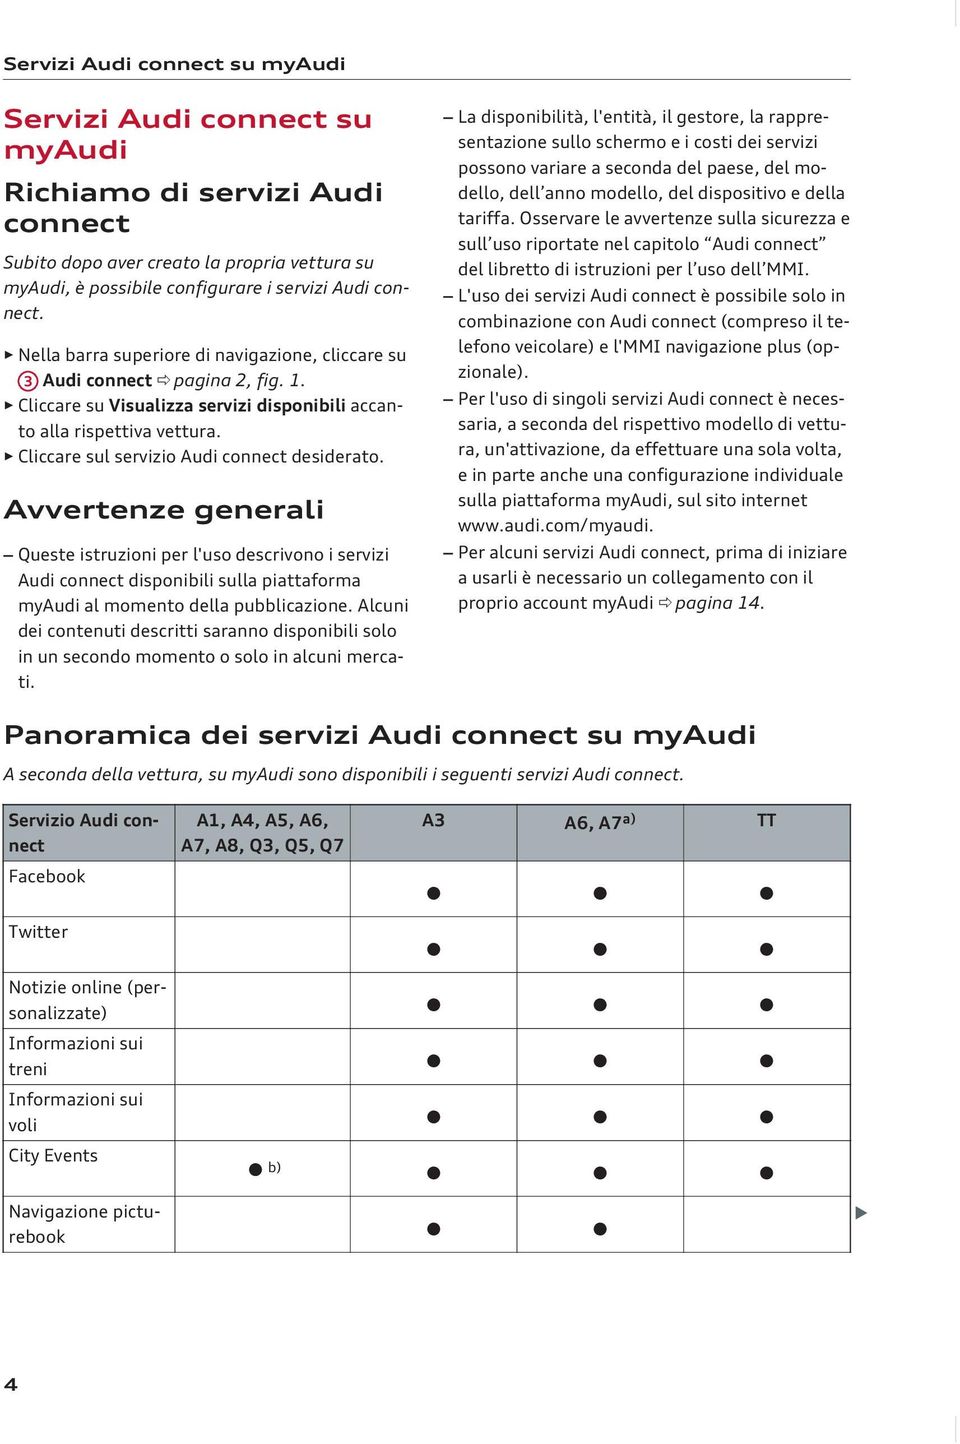 Cliccare sul servizio Audi connect desiderato. Avvertenze generali Queste istruzioni per l'uso descrivono i servizi Audi connect disponibili sulla piattaforma myaudi al momento della pubblicazione.